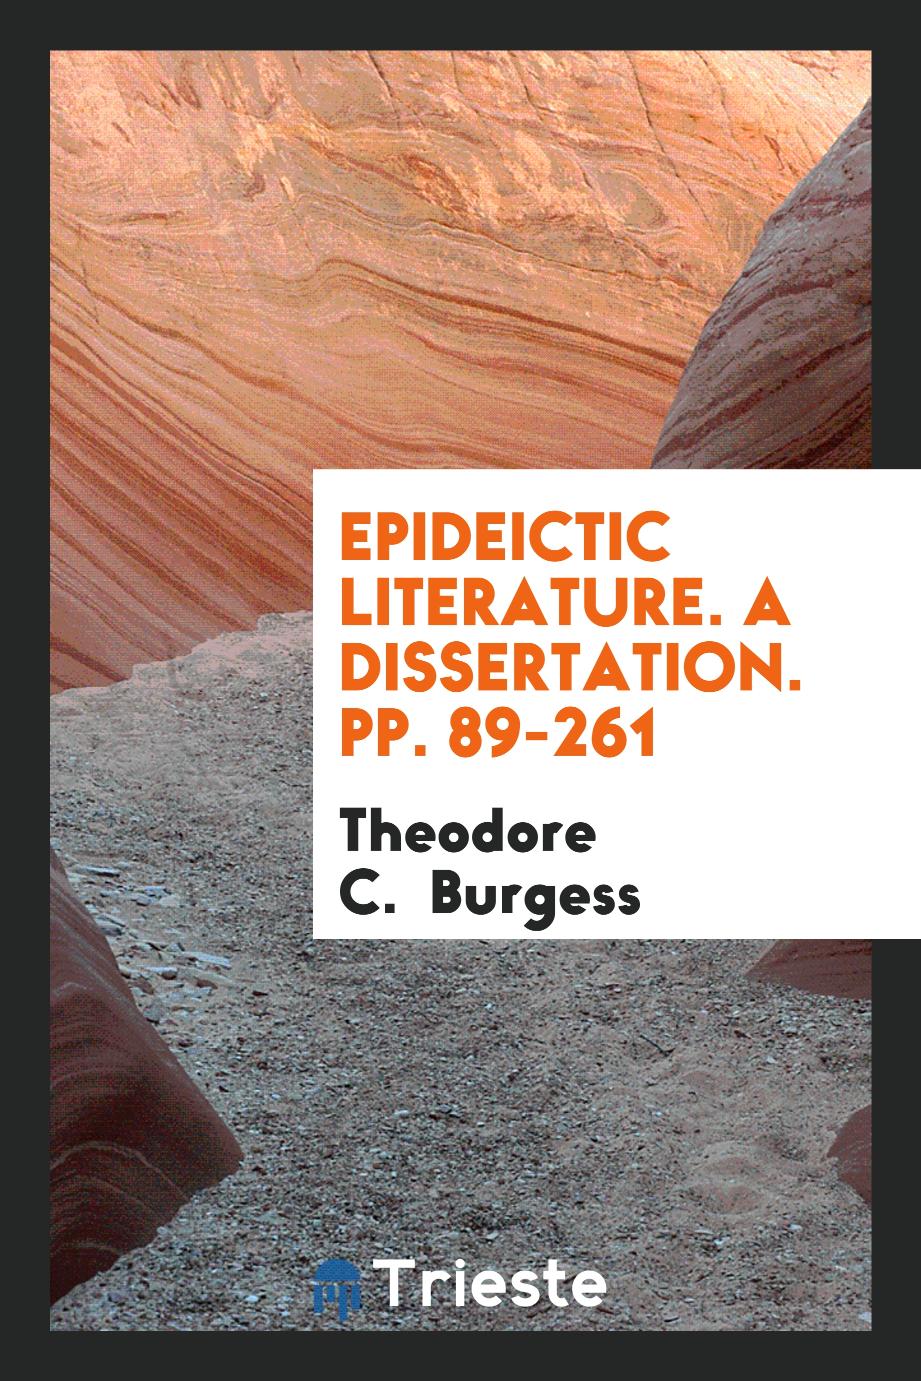 Epideictic Literature. A Dissertation. pp. 89-261